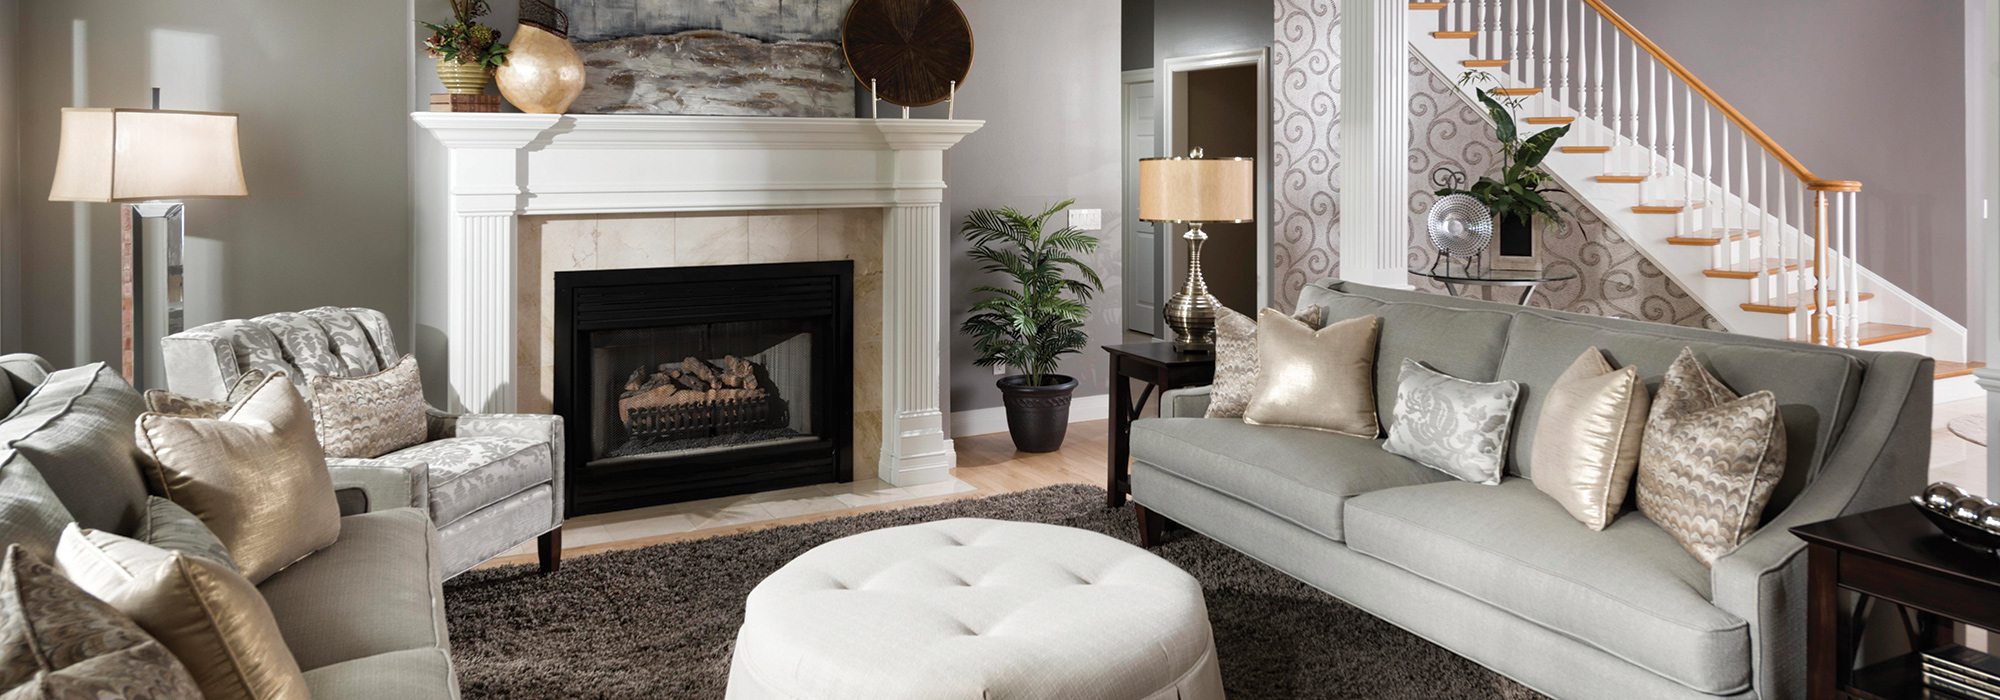 417 Home Design Awards 2015 - Living Room Winner